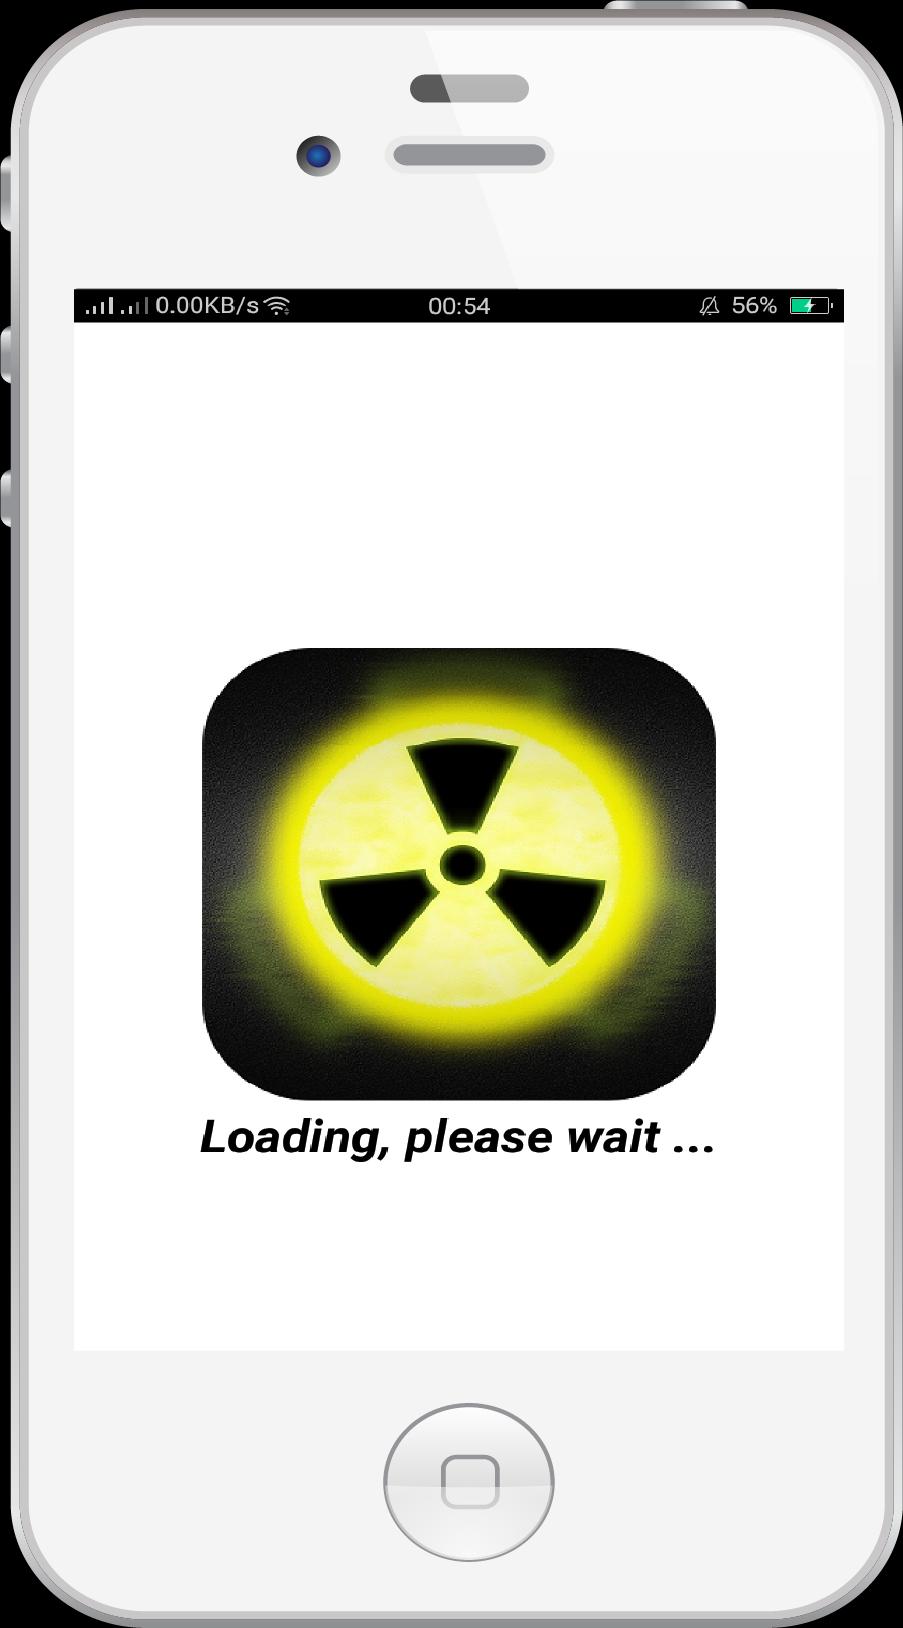 Sonidos de alarma nuclear for Android - APK Download